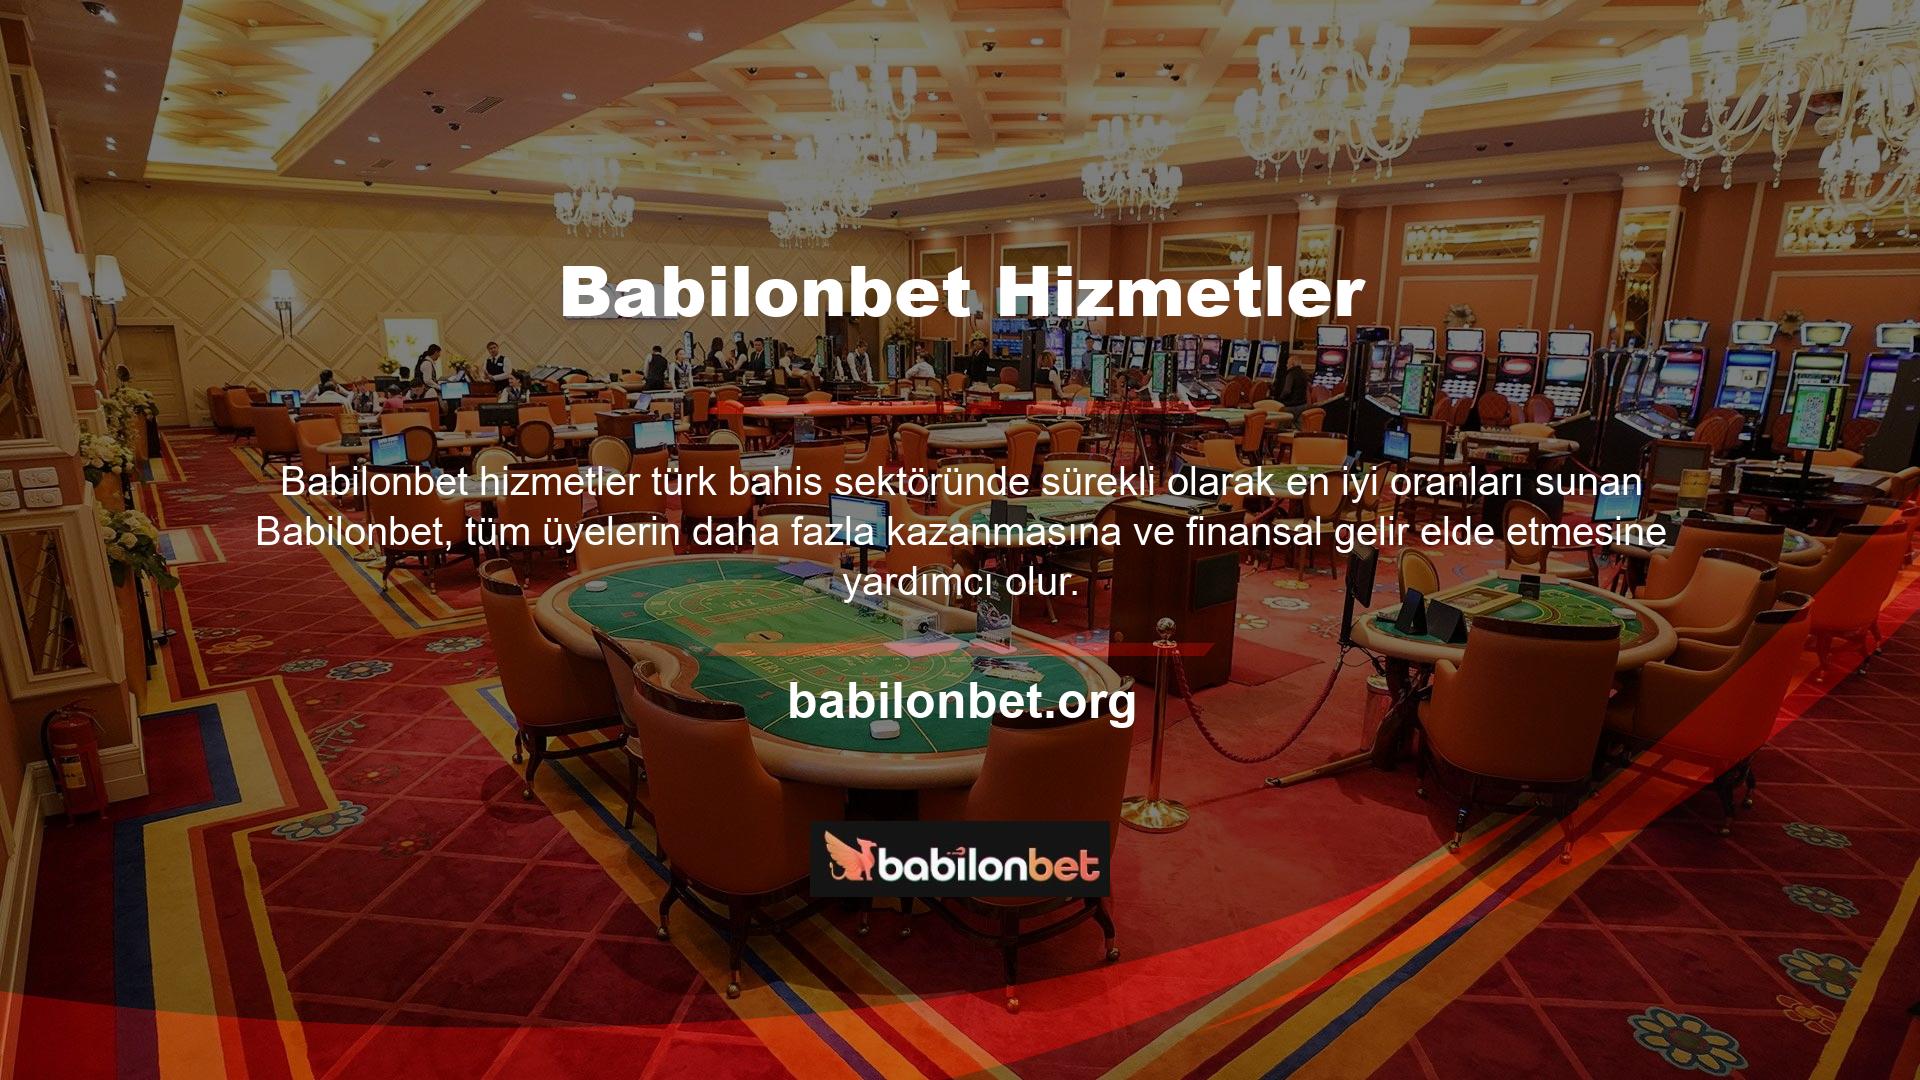 Canlı bahis siteleri, saygın bir lisanslama kuruluşundan alınan casino lisansı ile Türkçe yayın yapmaktadır